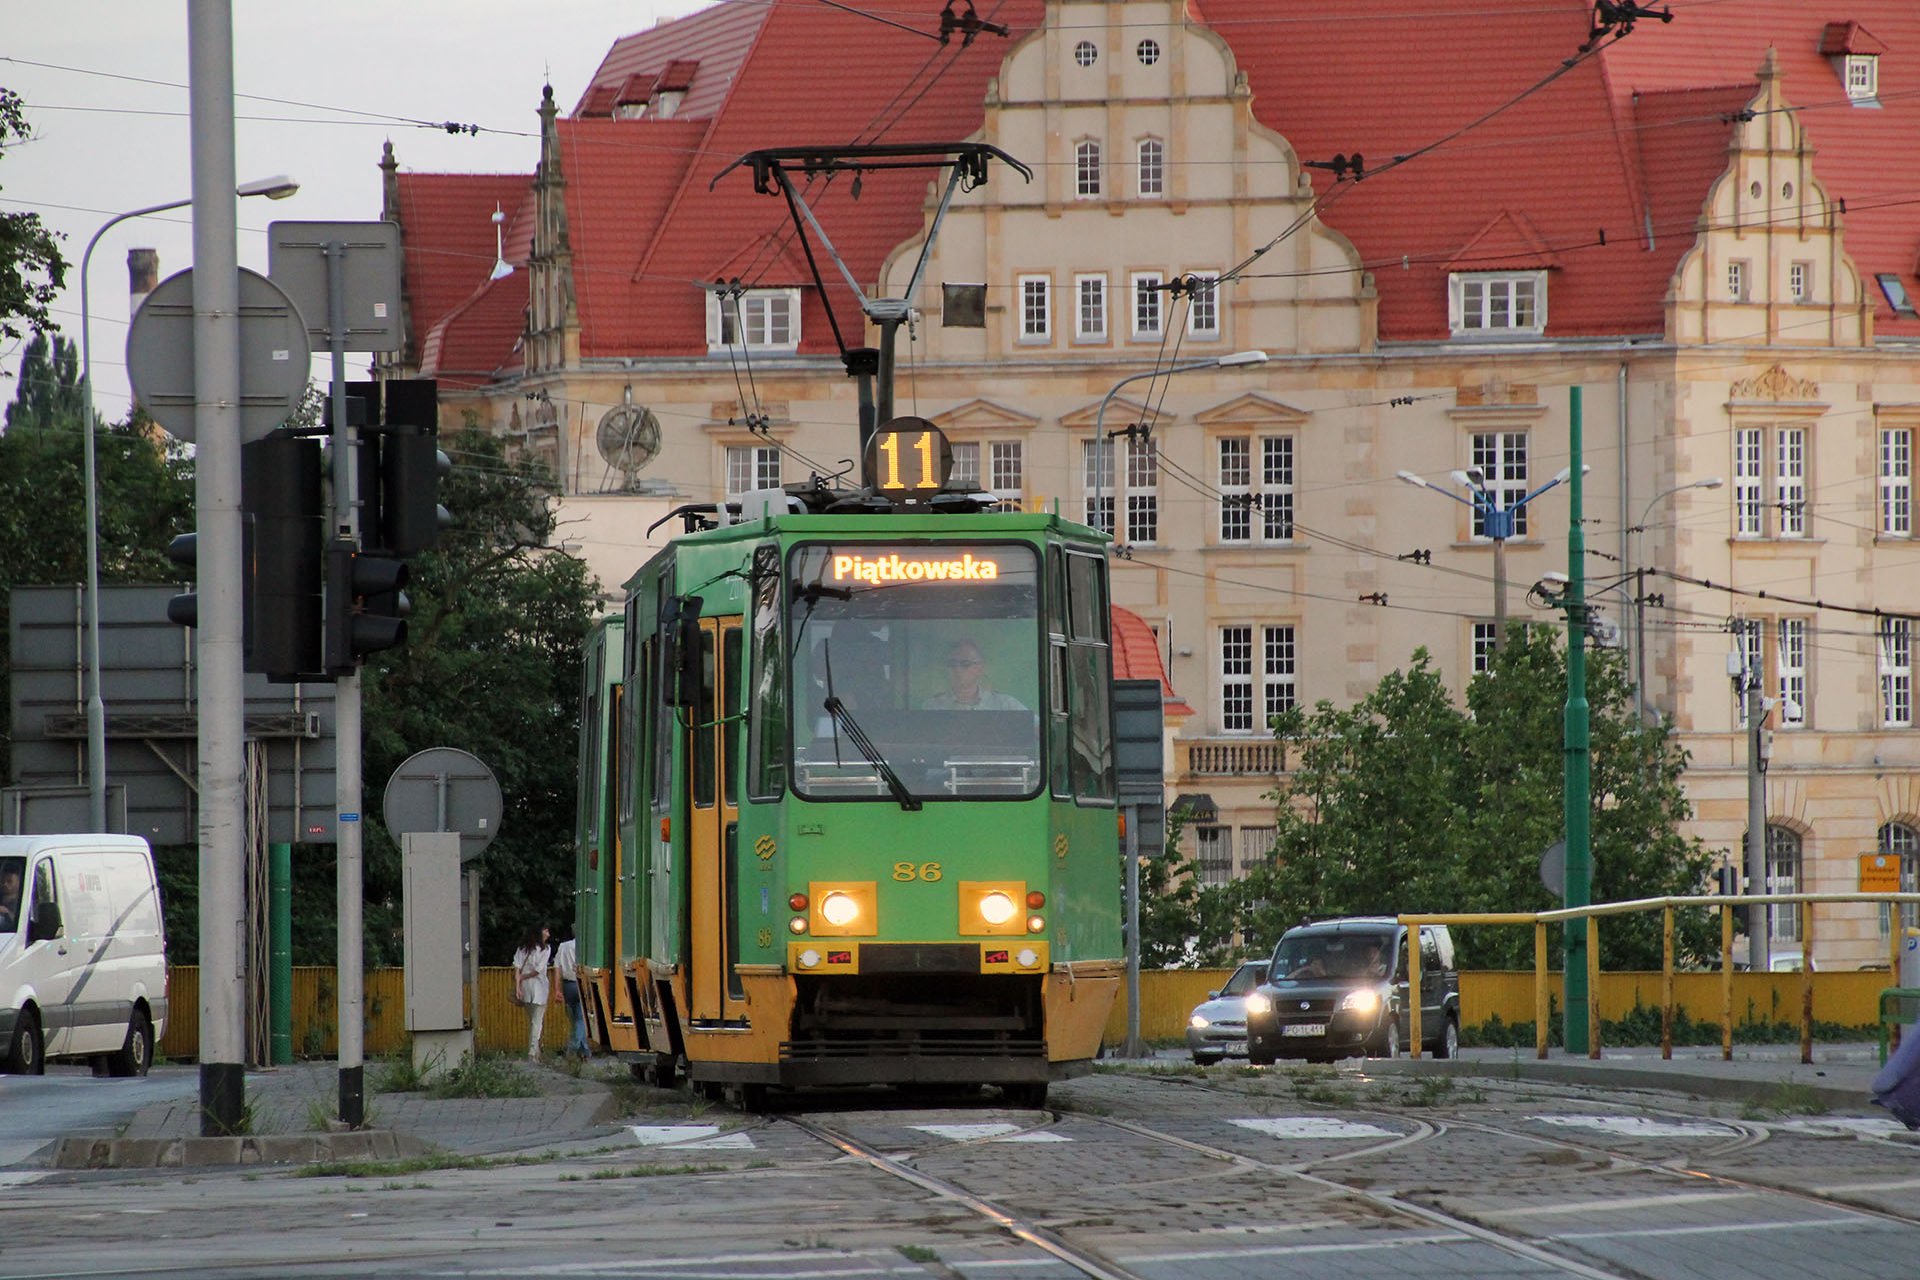 Konstal 105Na 86 Der polnische Standardtyp aus den 1970er Jahren ist auch in Posen im Einsatz. The polish standard tram from the 1970s is also in Poznan in service.